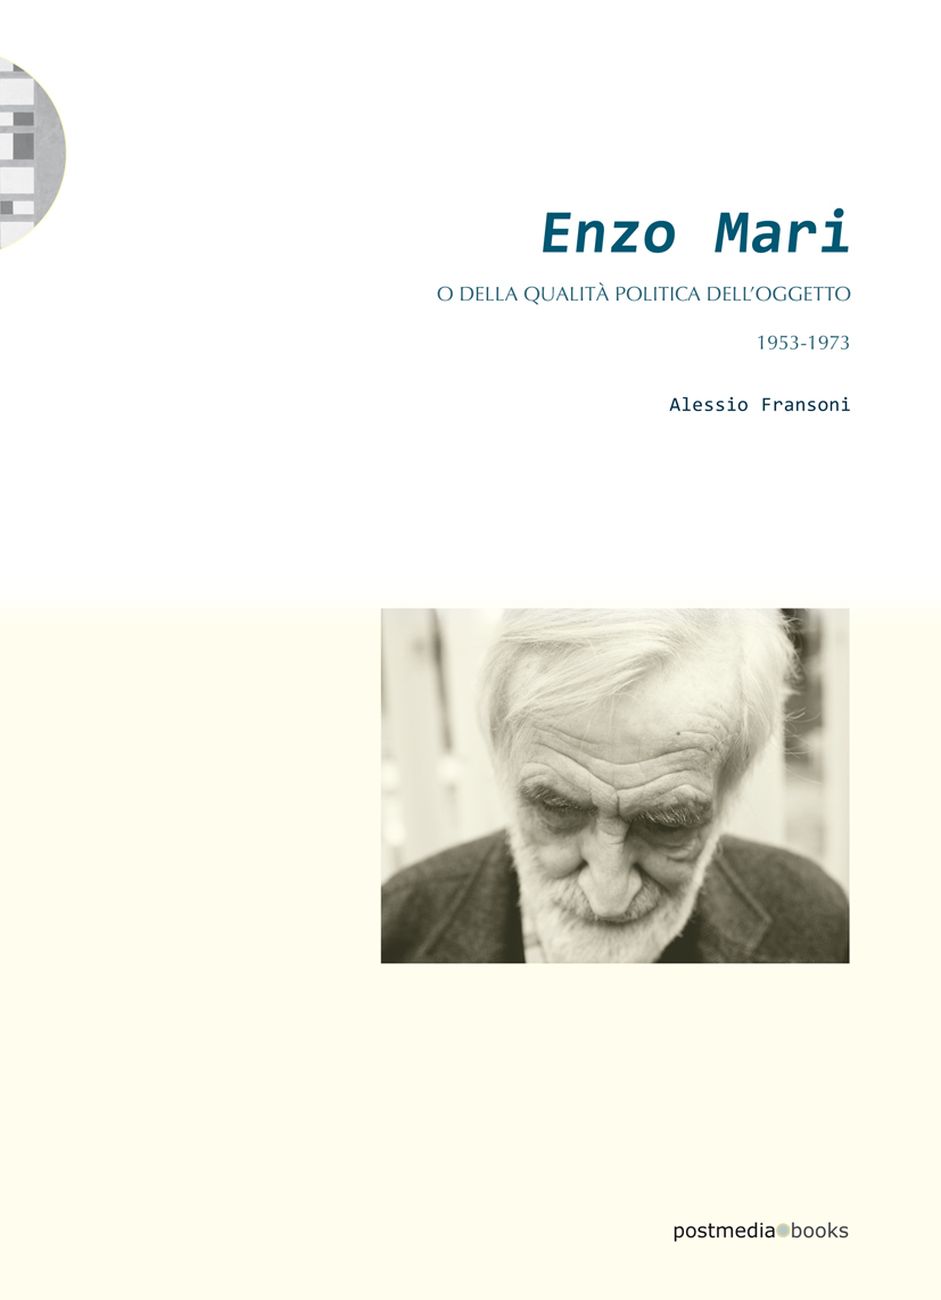 Alessio Fransoni – Enzo Mari o della quantità politica dell'oggetto 1953 1973 (Postmedia Books, Milano 2019)